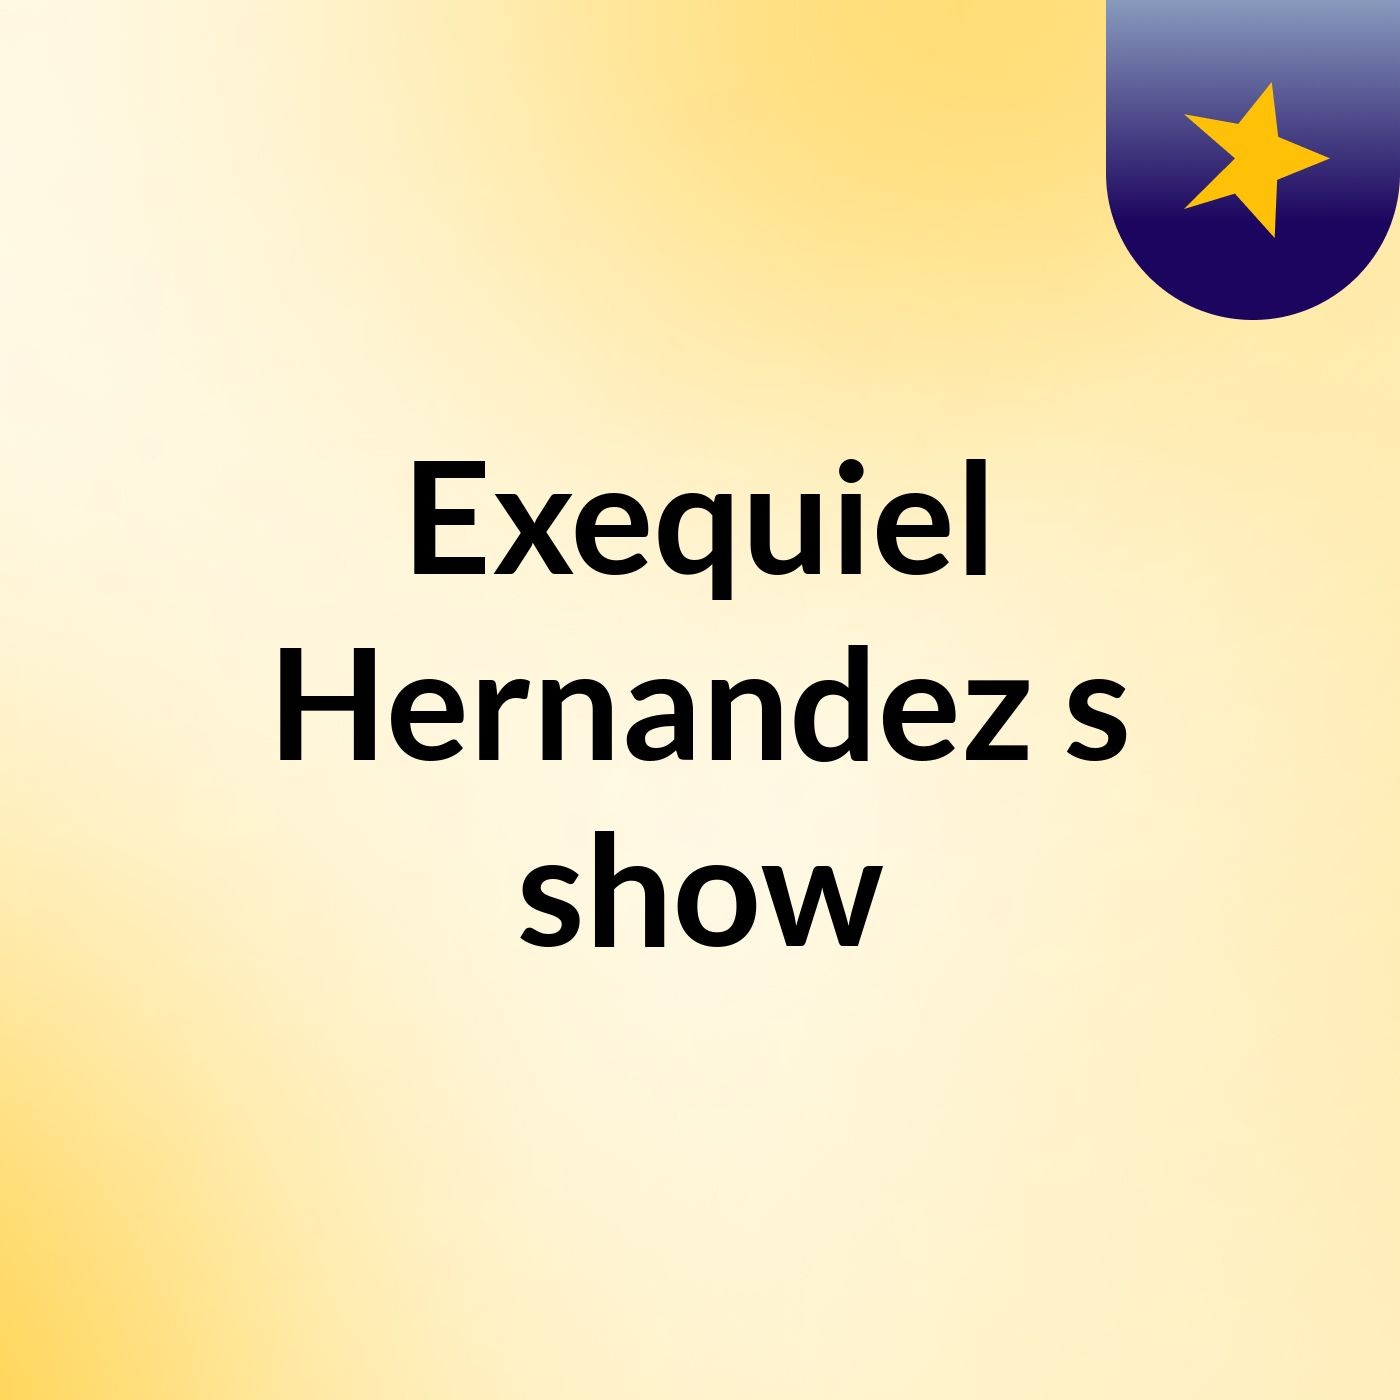 Exequiel Hernandez's show